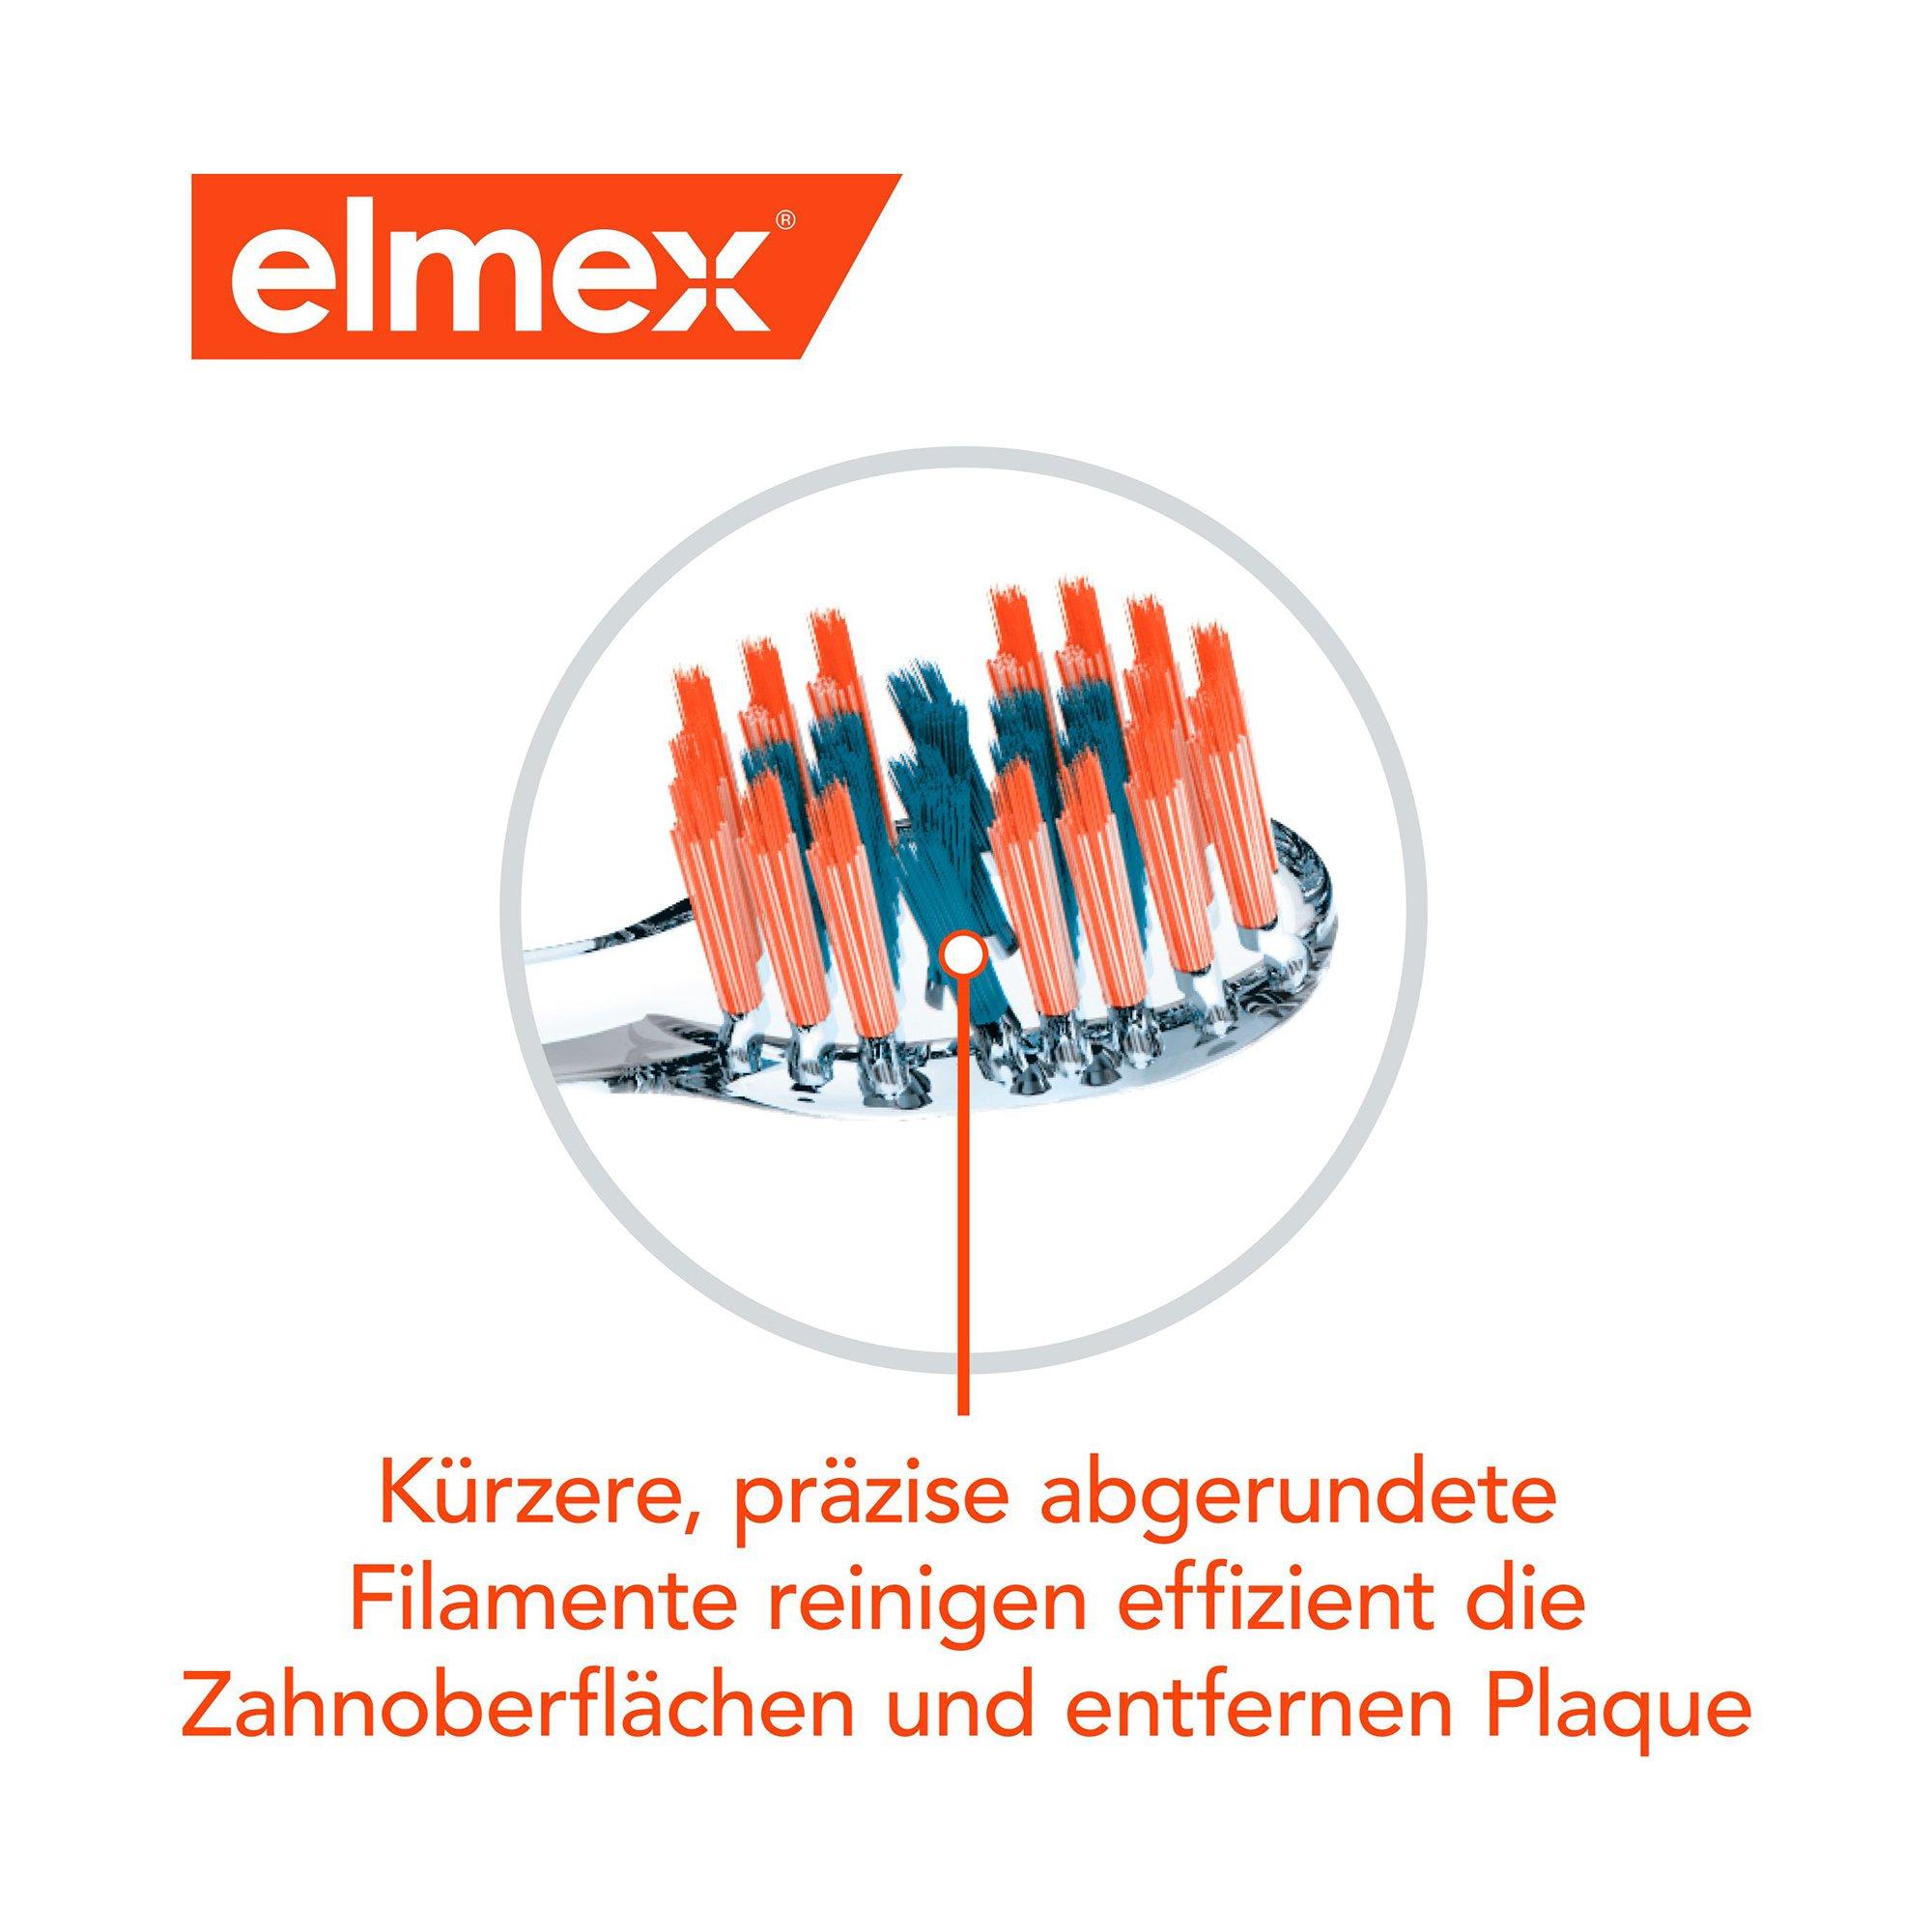 elmex  Pro Interdental Mittel Zahnbürste, Präzise Reinigung Der Zahnzwischenräume 